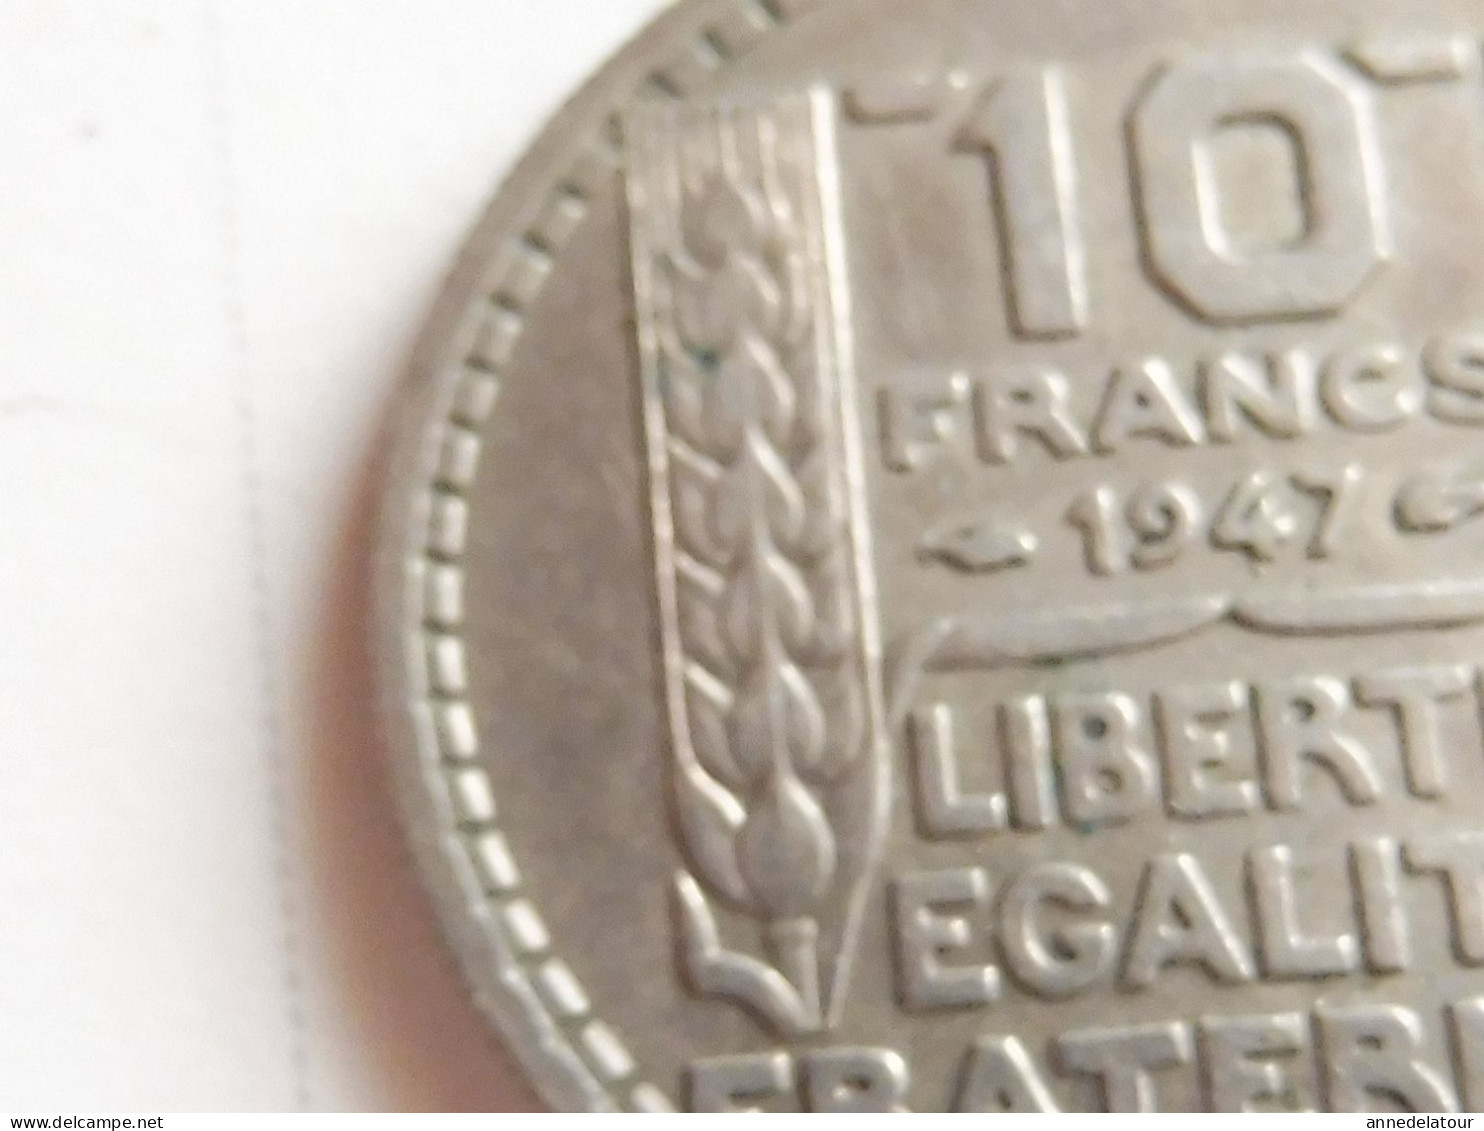 Année 1947  "B"  pièce  de  10 francs   (Turin ) (République Française)   en alliage nickel